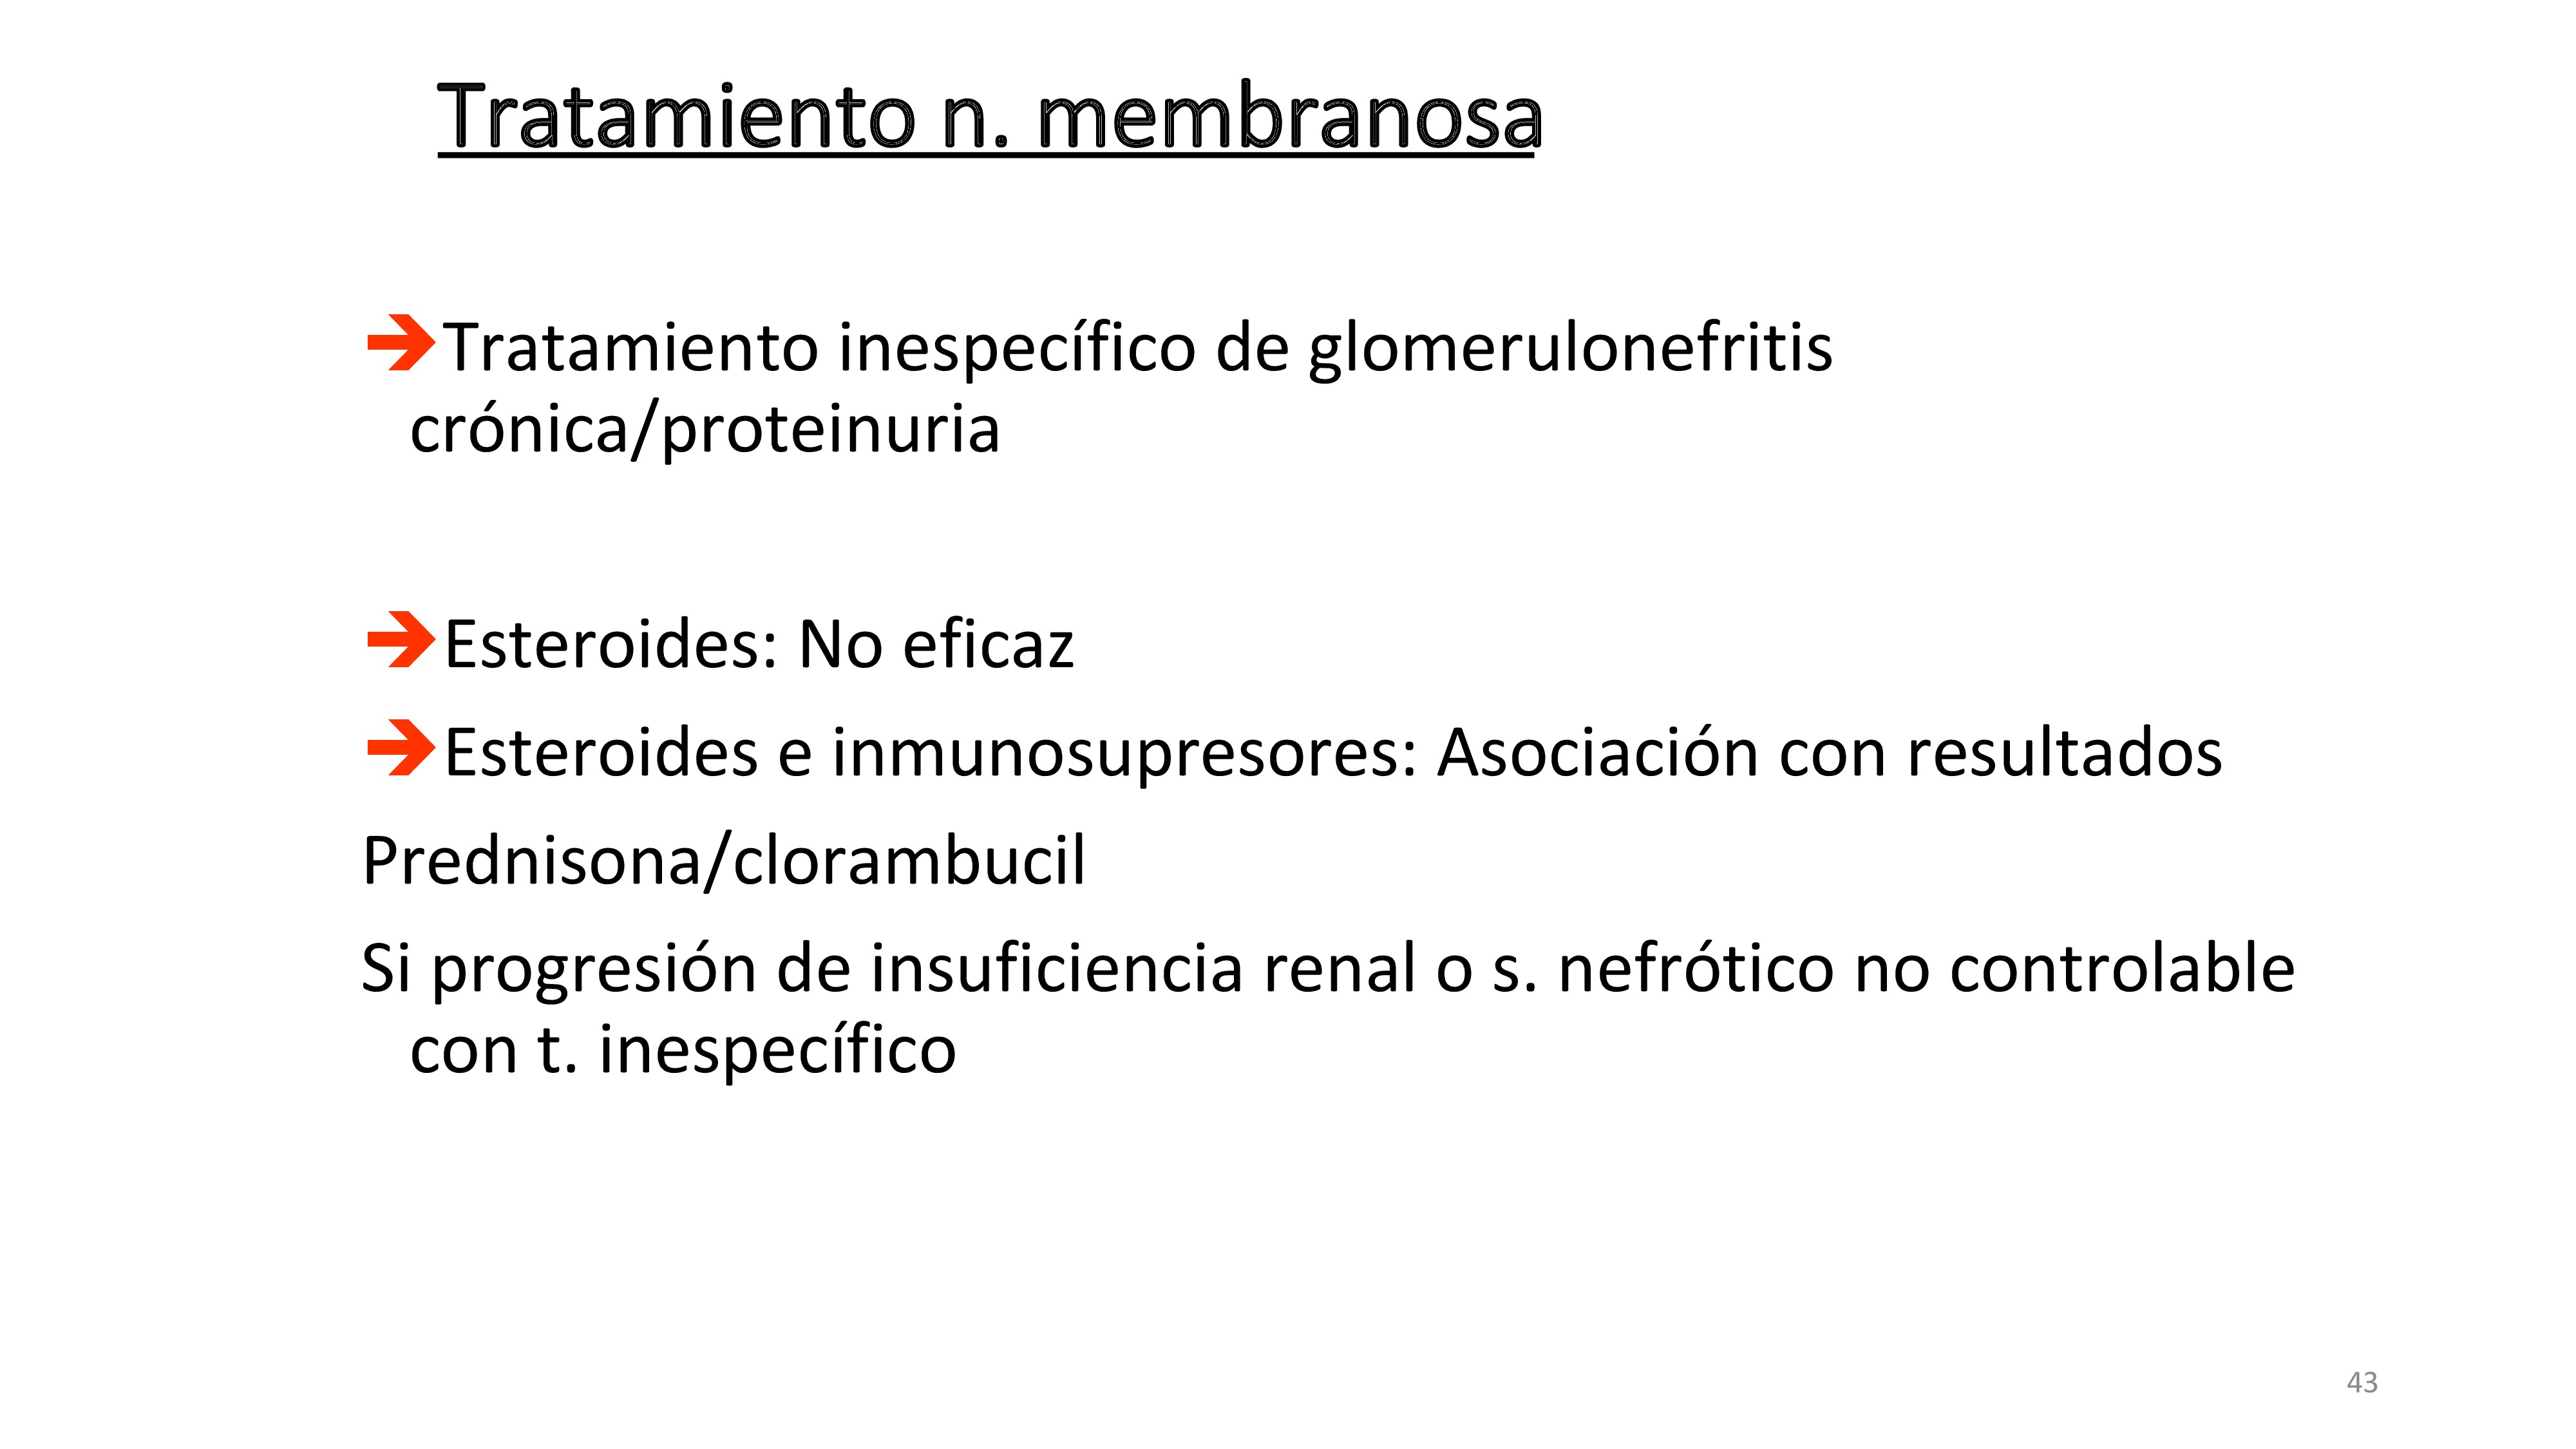 El tratamiento de la GMN Membranosa primaria tiene dos abordajes. A) El inespecífico de las GMN y del síndrome nefrótico. B) Inmunosupresión con esteroides solos o asociados a otros como clorambucil